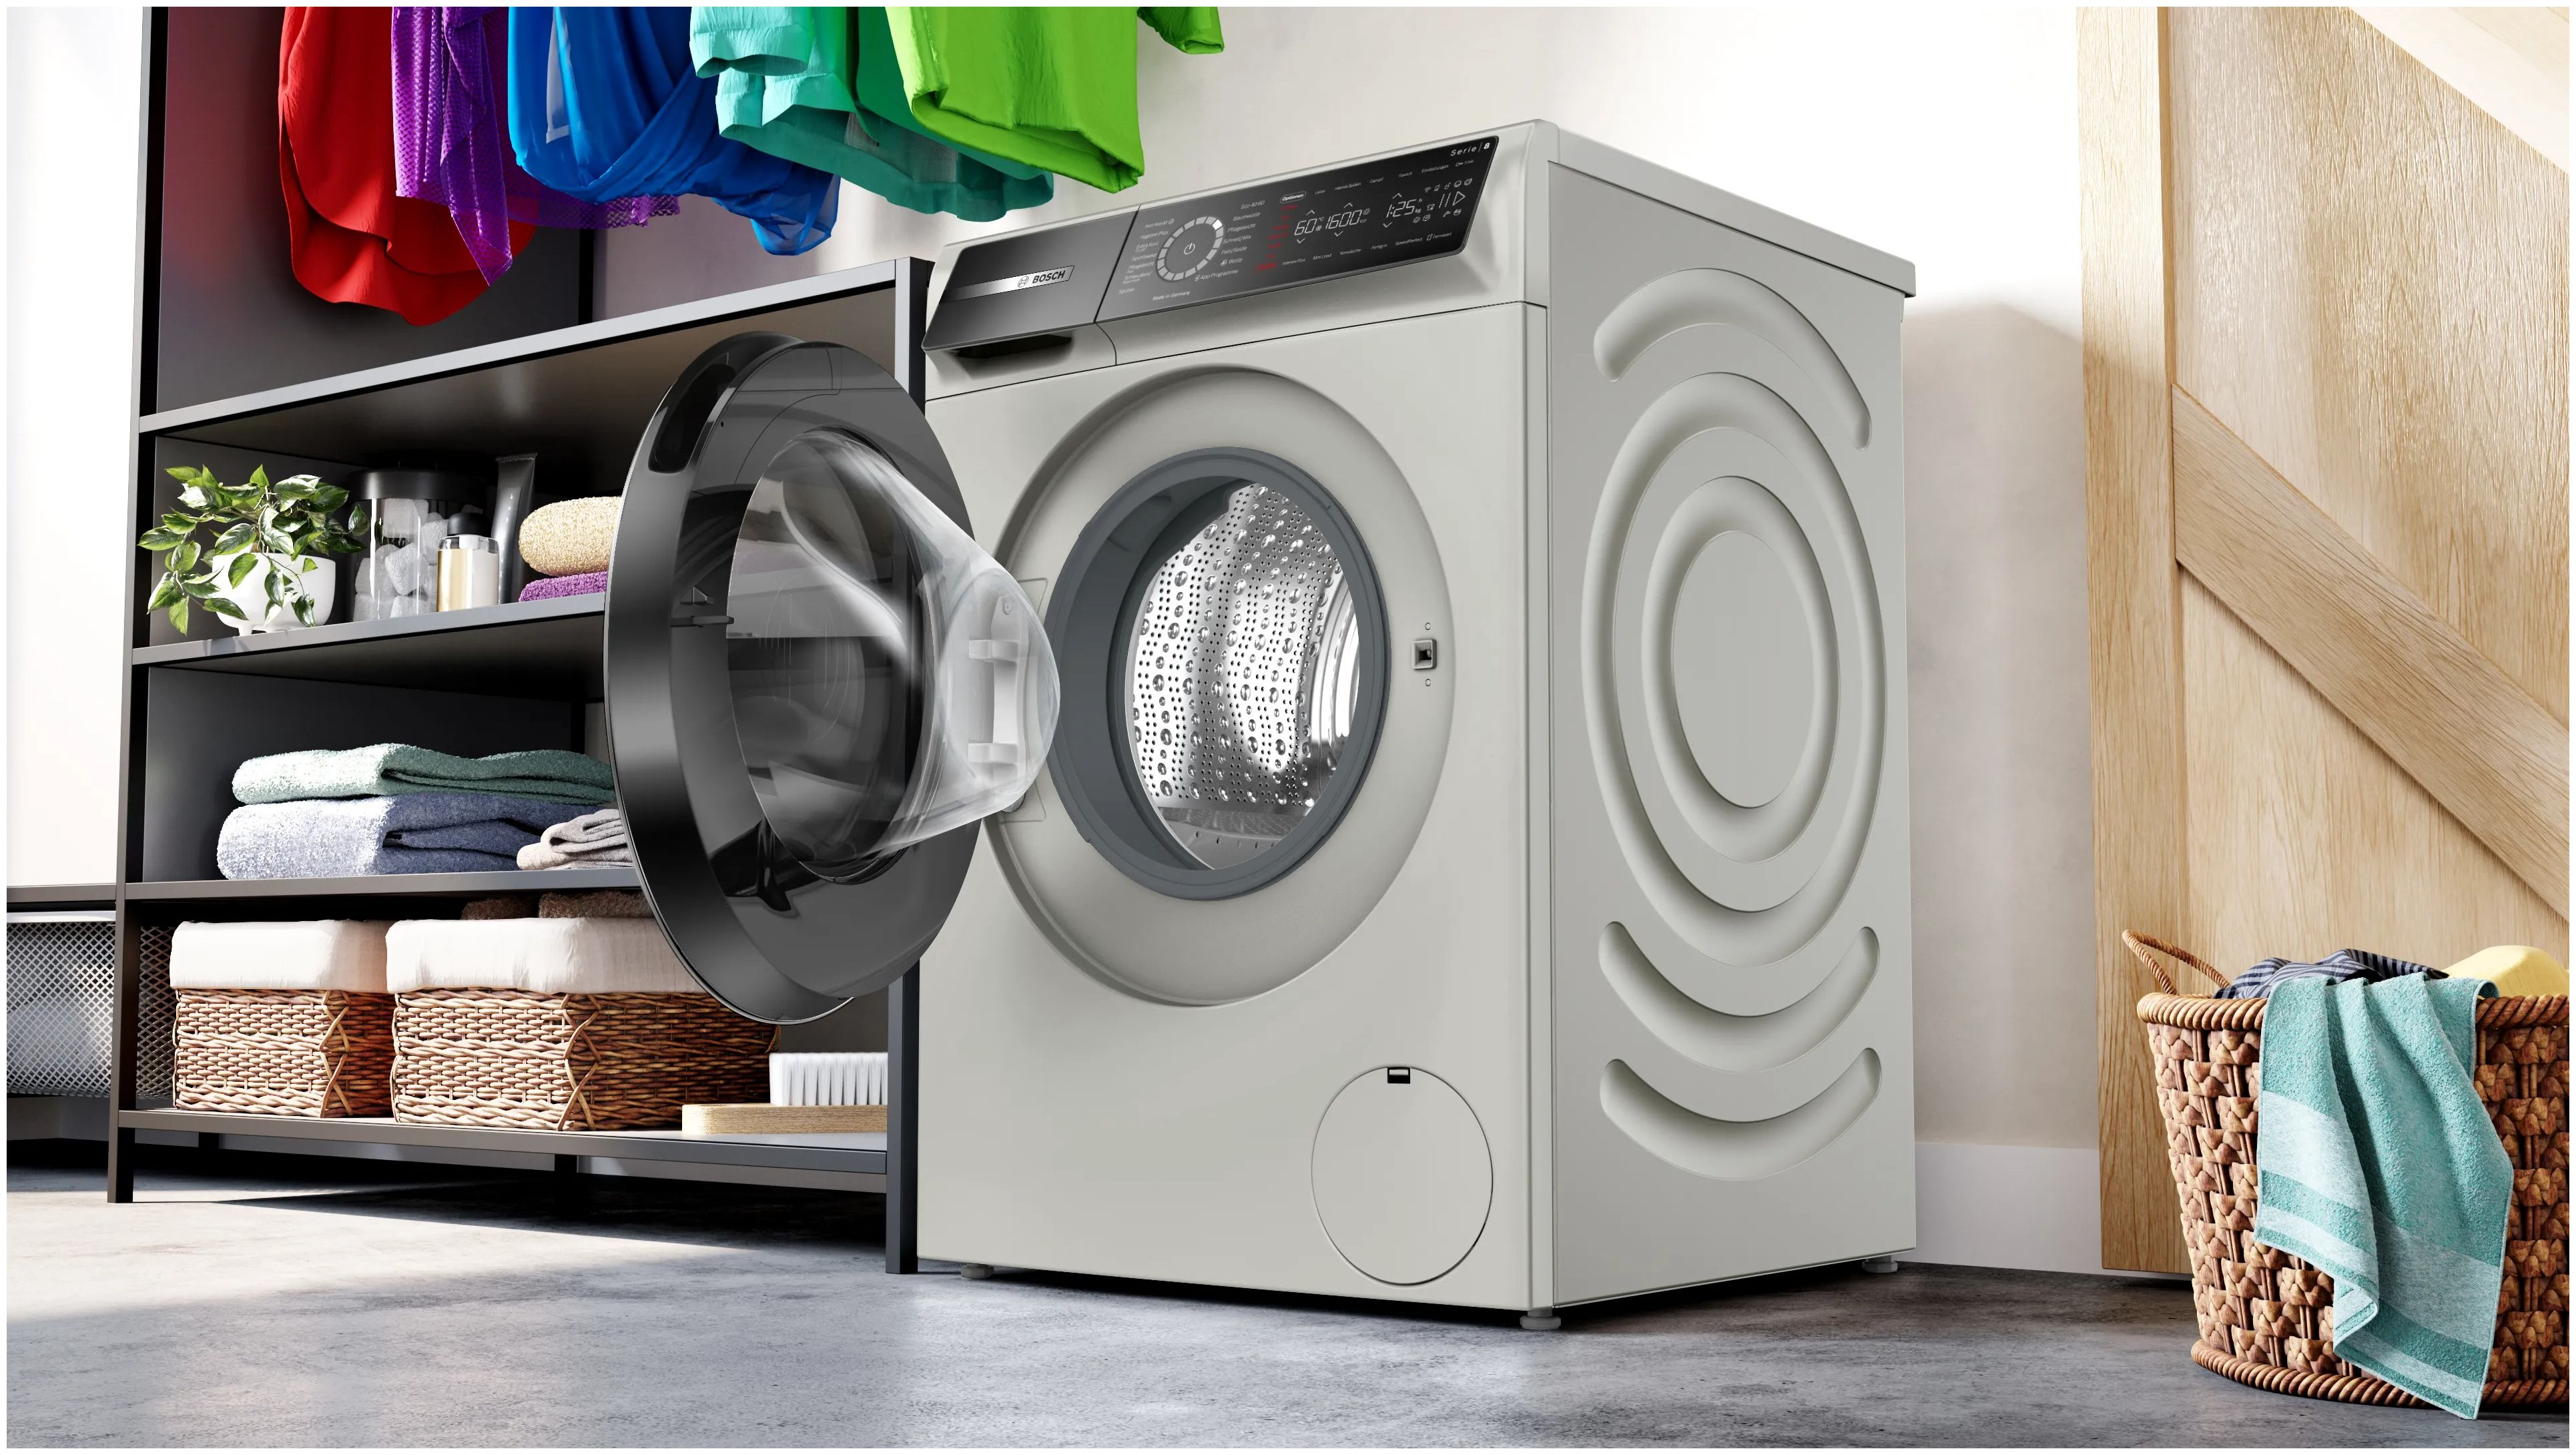 AutoClean WGB2560X0 kg expert aquaStop U/min Serie 8 1600 Technomarkt Bosch von A Waschmaschine 10 Frontlader EEK: